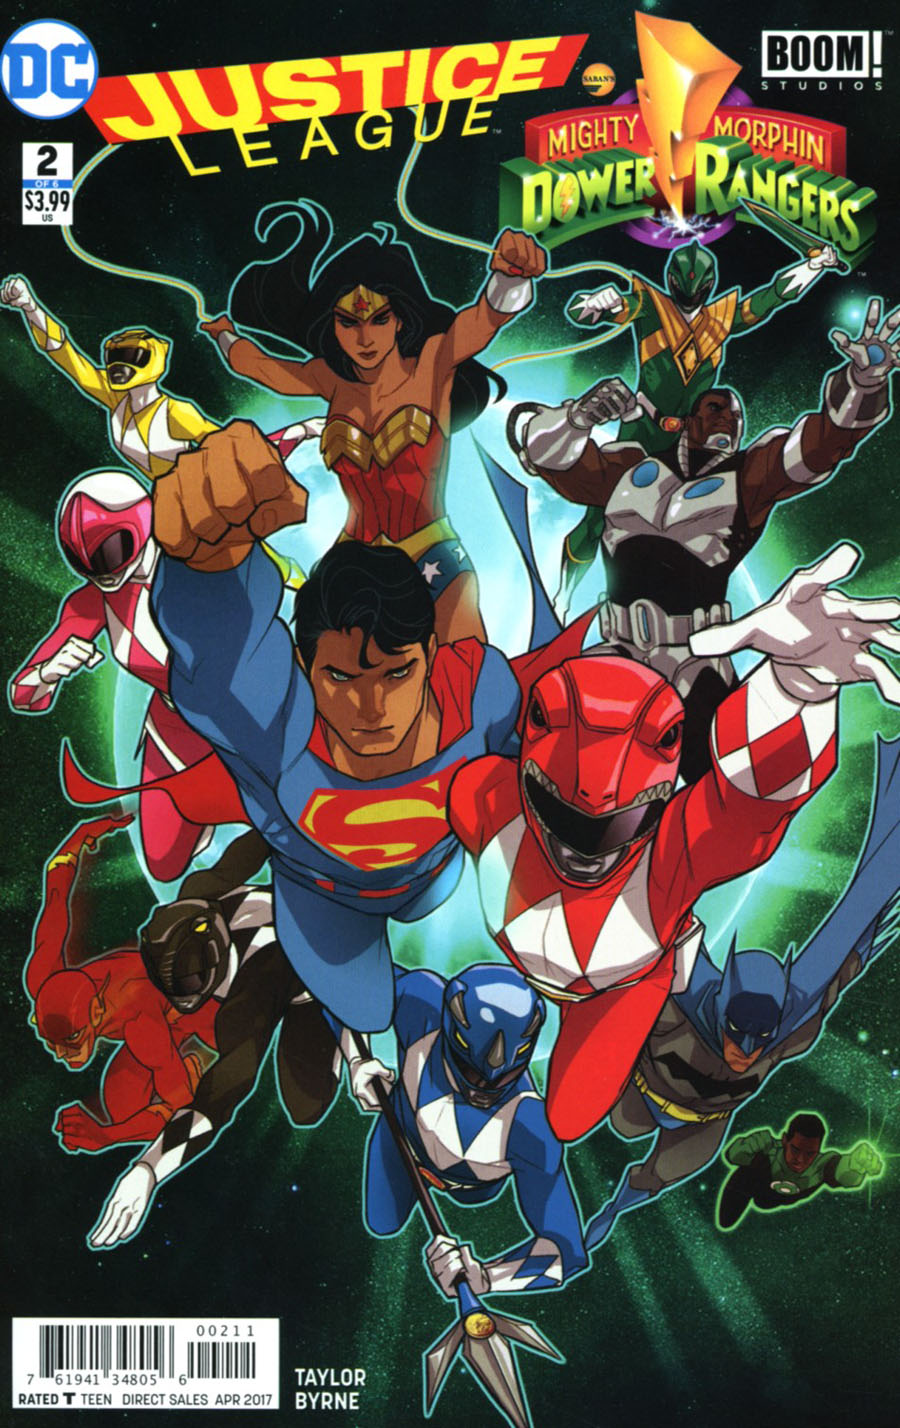 Justice League Power Rangers #2